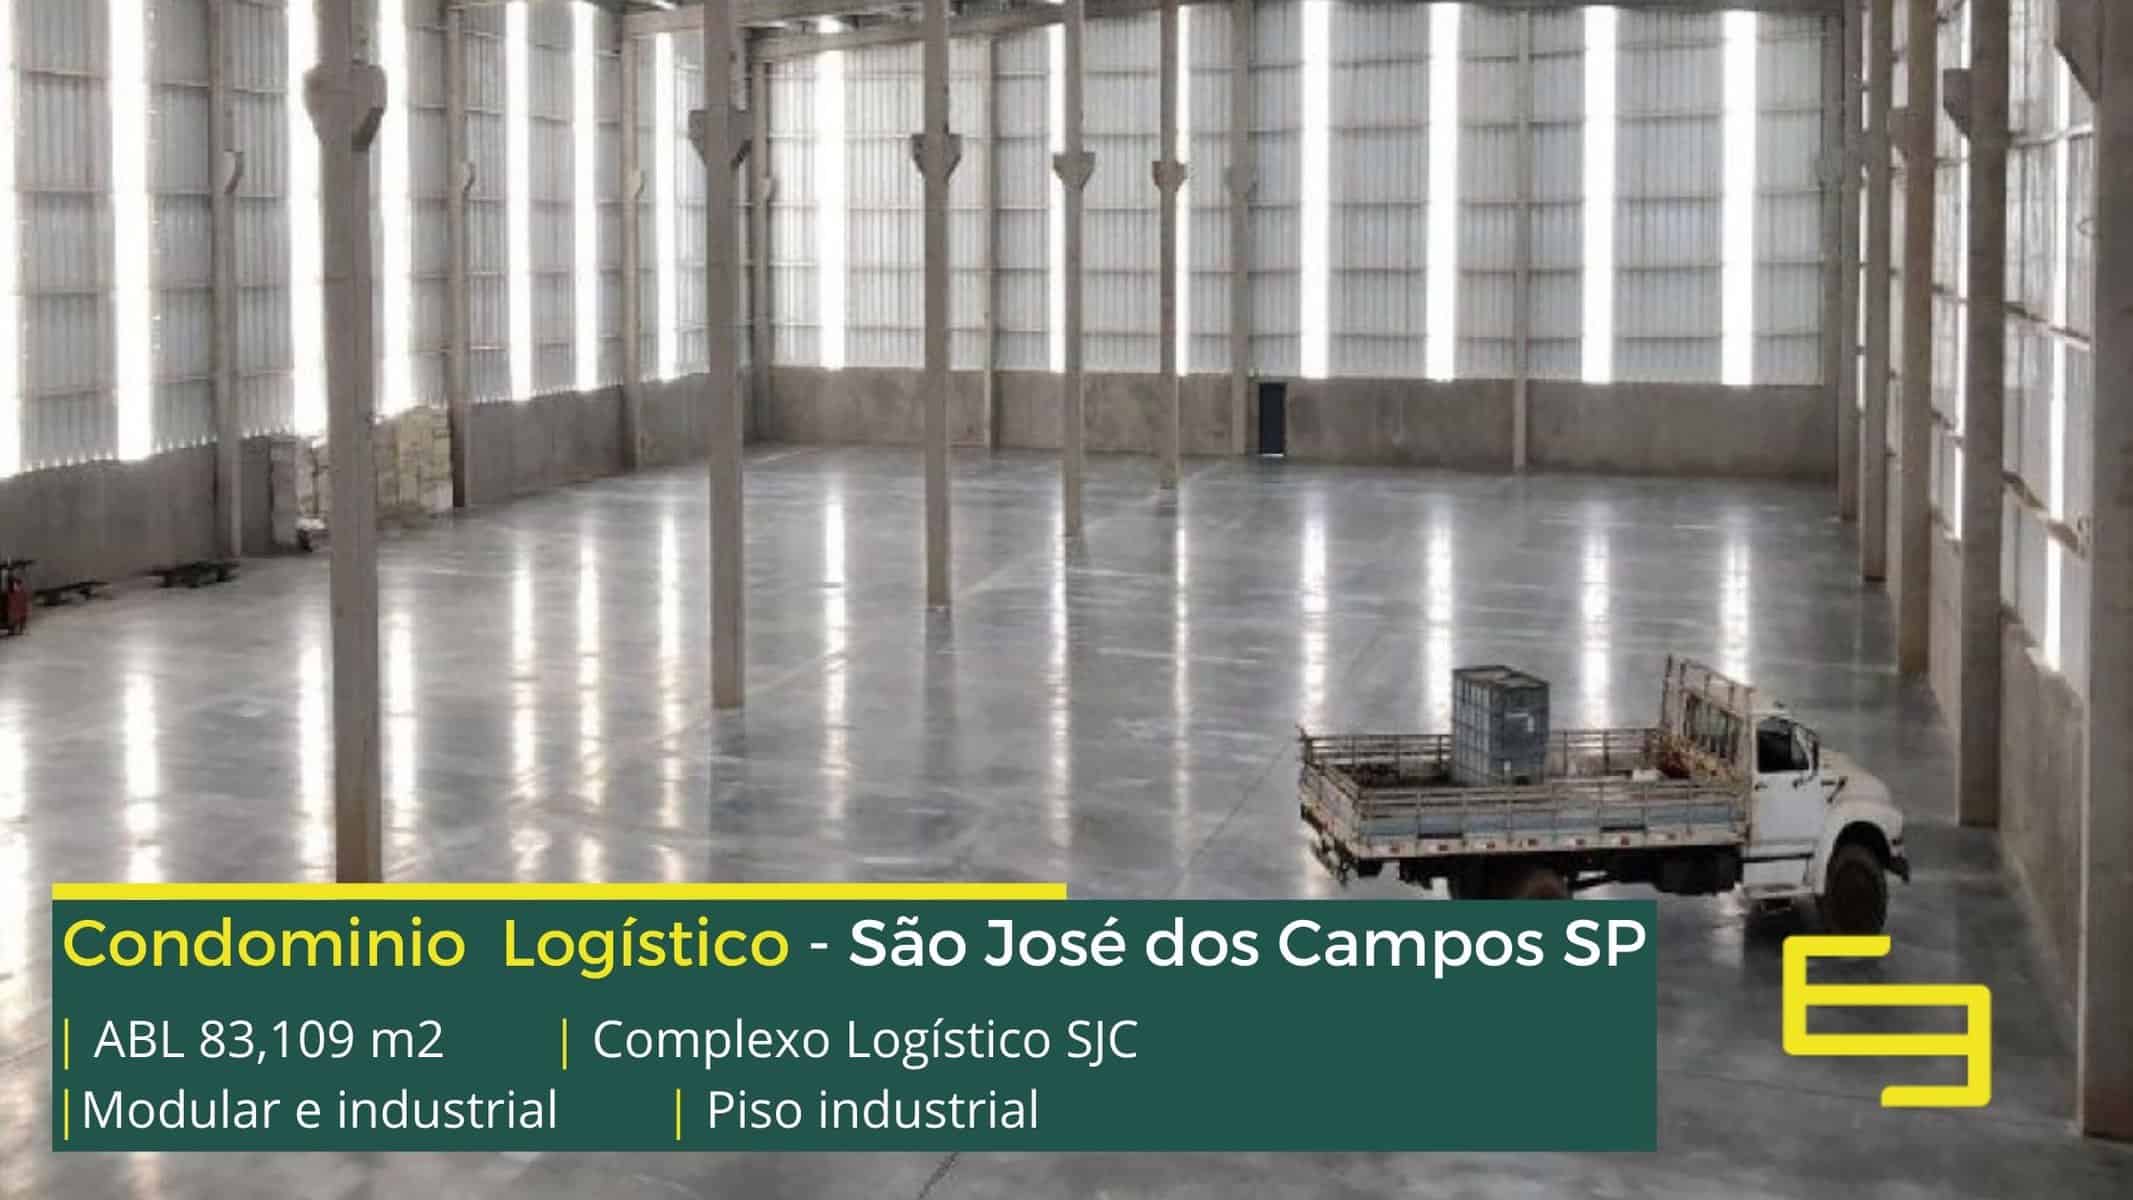 Industrial HGLG São José dos Campos - São José dos Campos SP